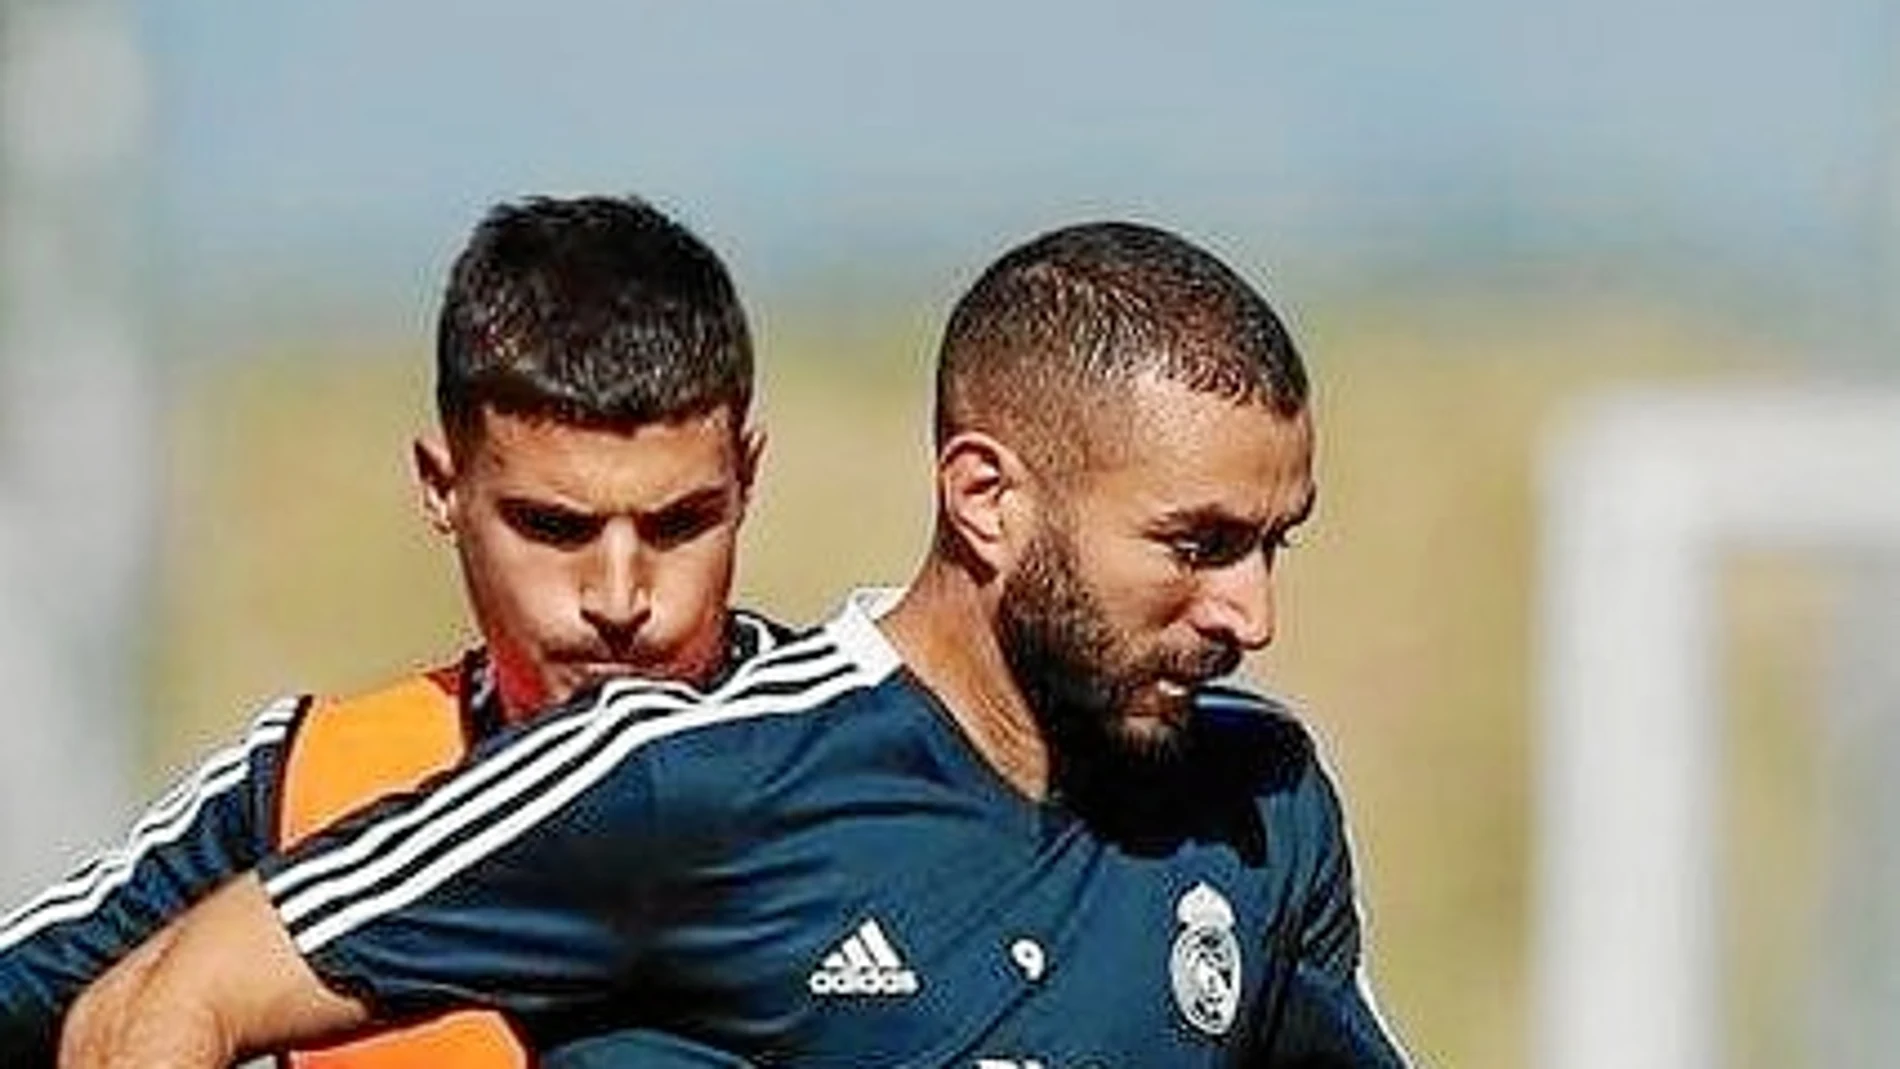 Benzema se ha entrenado esta semana con el resto de la plantilla y hoy está listos para jugar/Foto: realmadrid.com